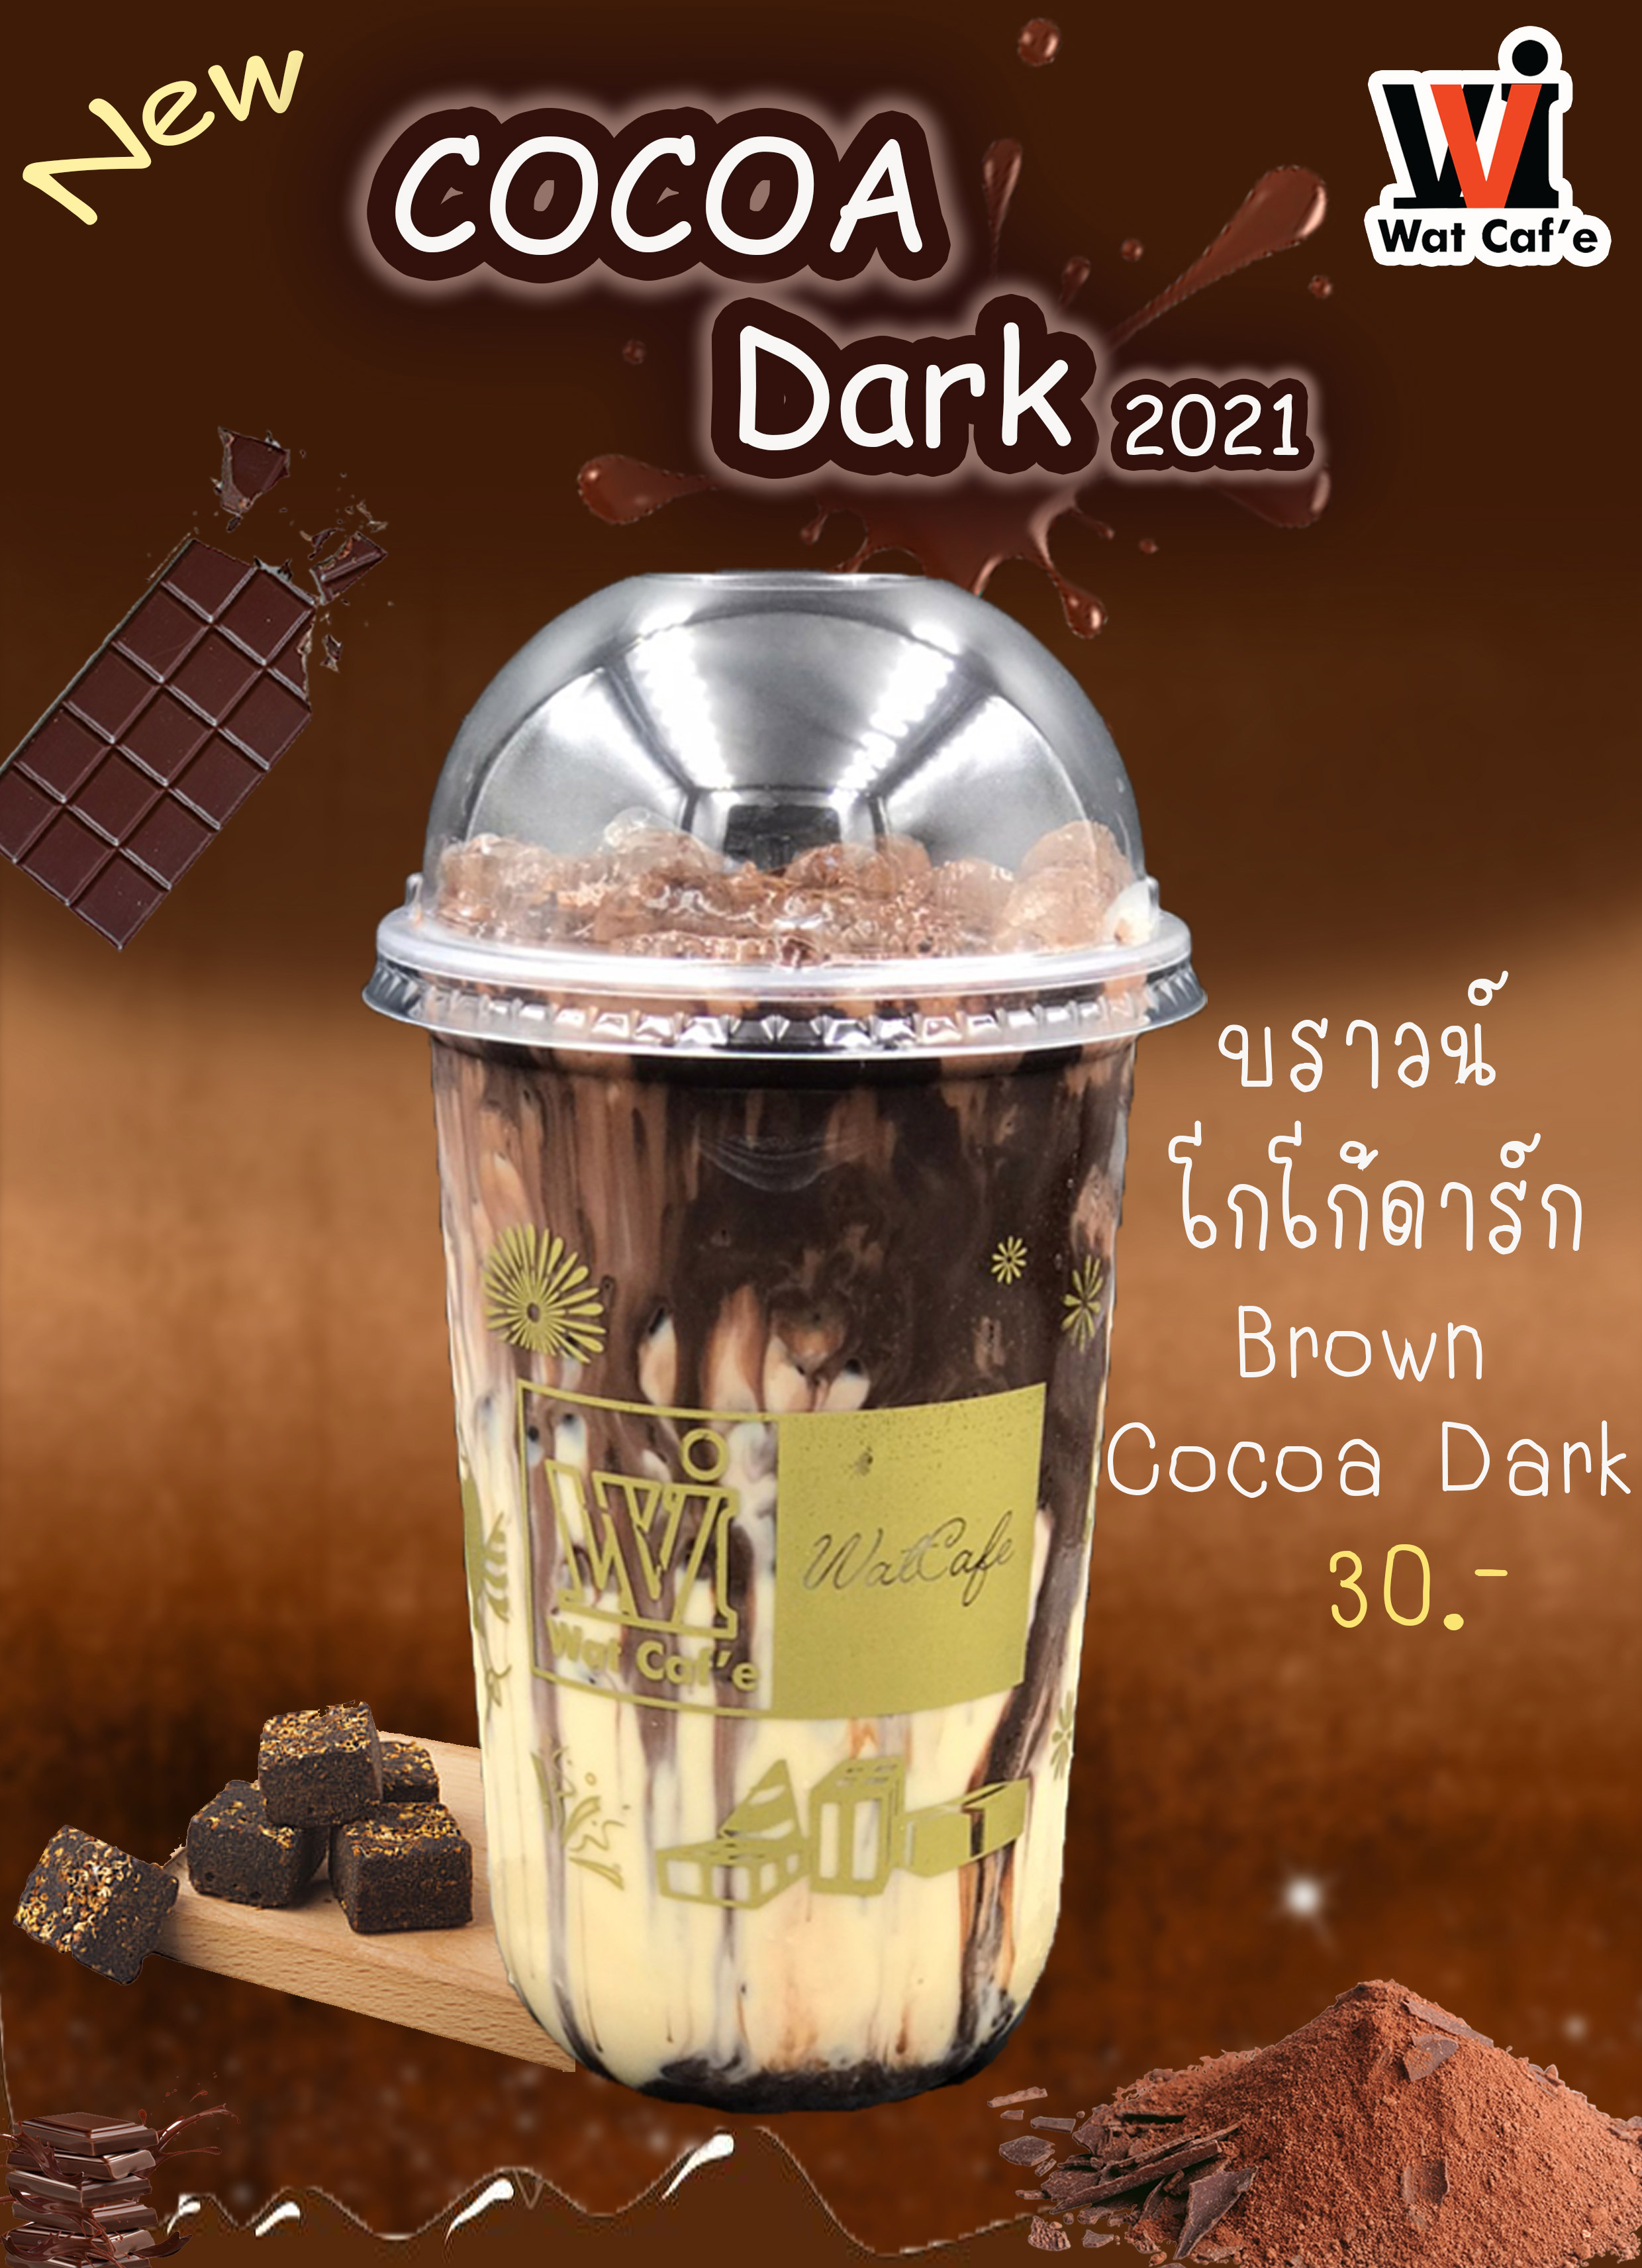 Brown Cocoa Dark